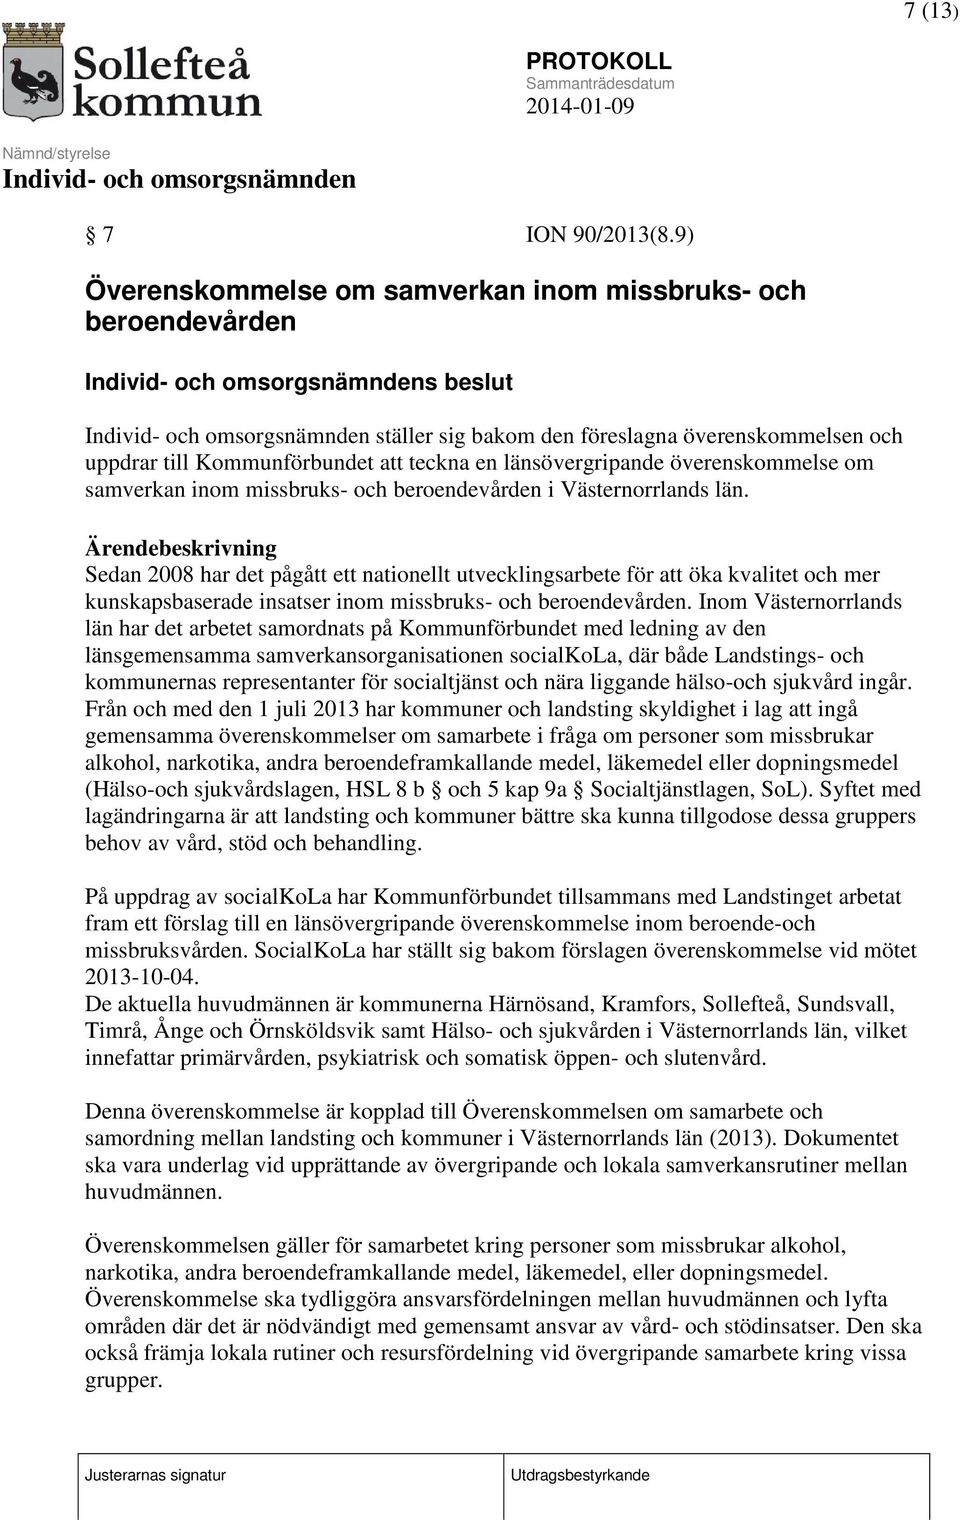 överenskommelse om samverkan inom missbruks- och beroendevården i Västernorrlands län.